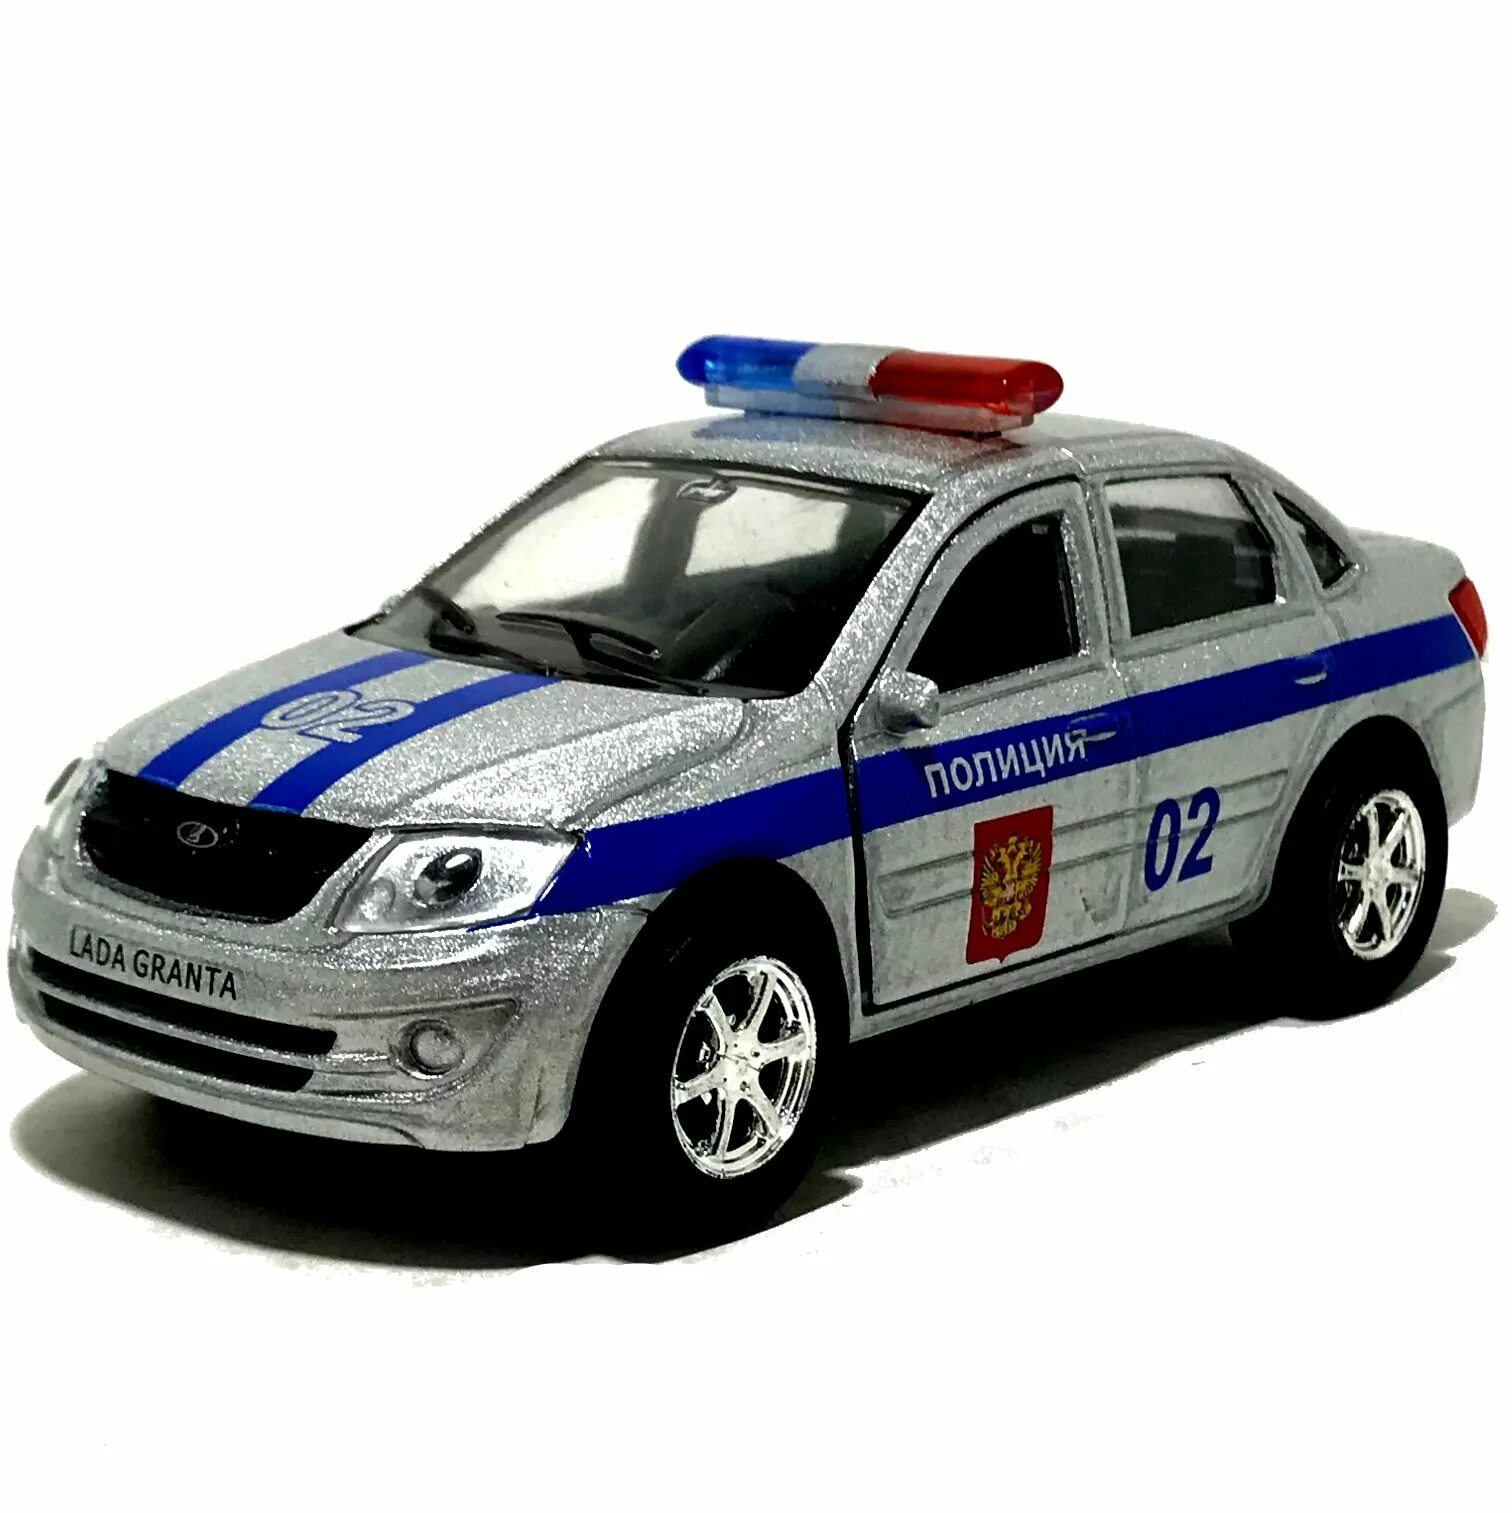 Картинки машин игрушки. Игрушечная Полицейская машинка ВАЗ 2115. Модель машины HWPD Police.